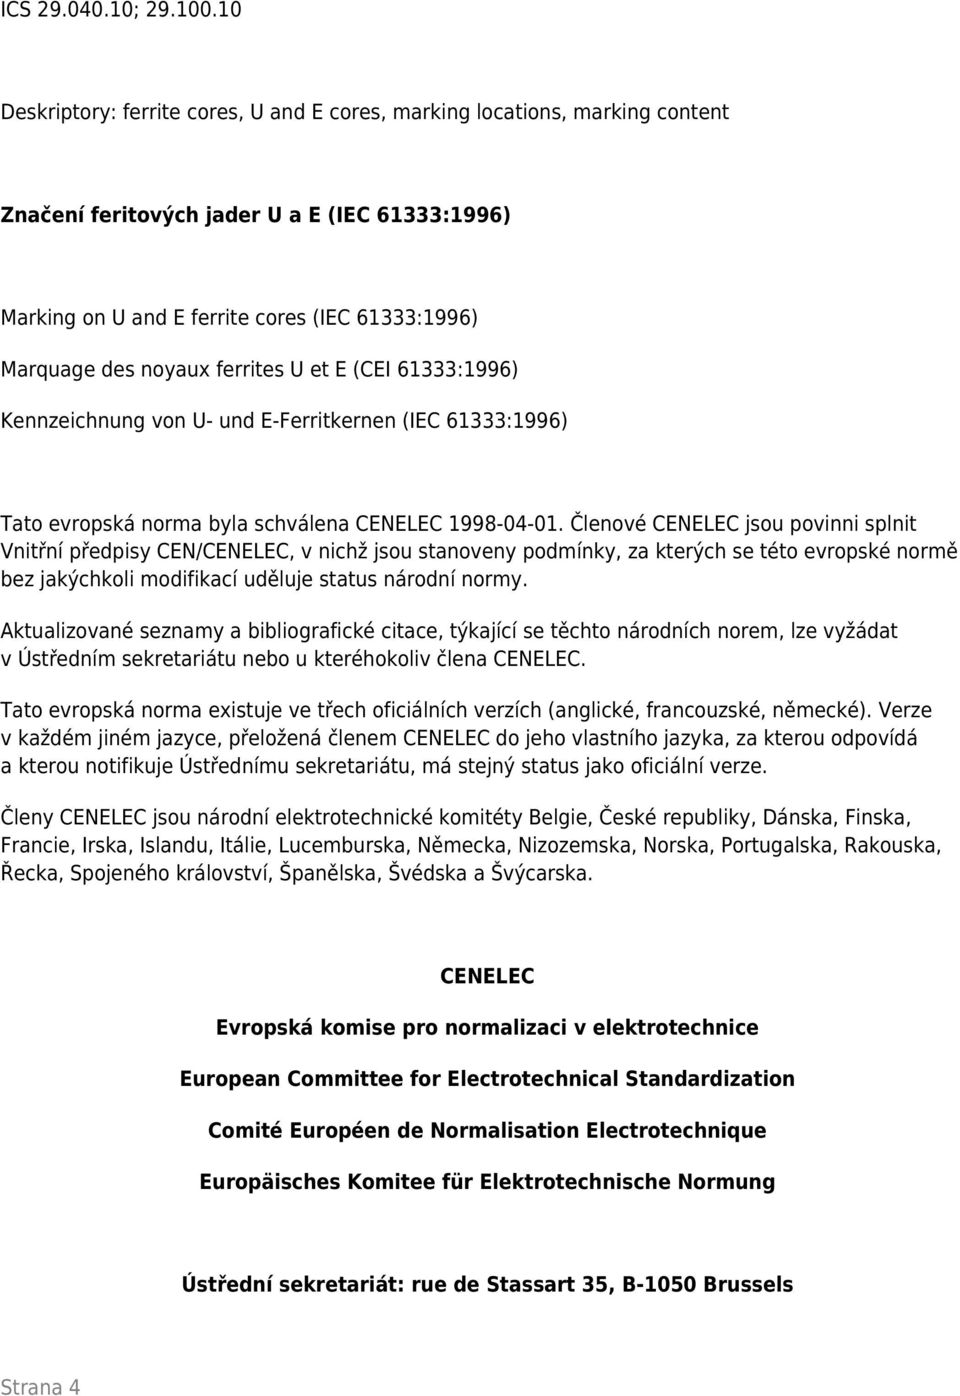 ferrites U et E (CEI 61333:1996) Kennzeichnung von U- und E-Ferritkernen (IEC 61333:1996) Tato evropská norma byla schválena CENELEC 1998-04-01.